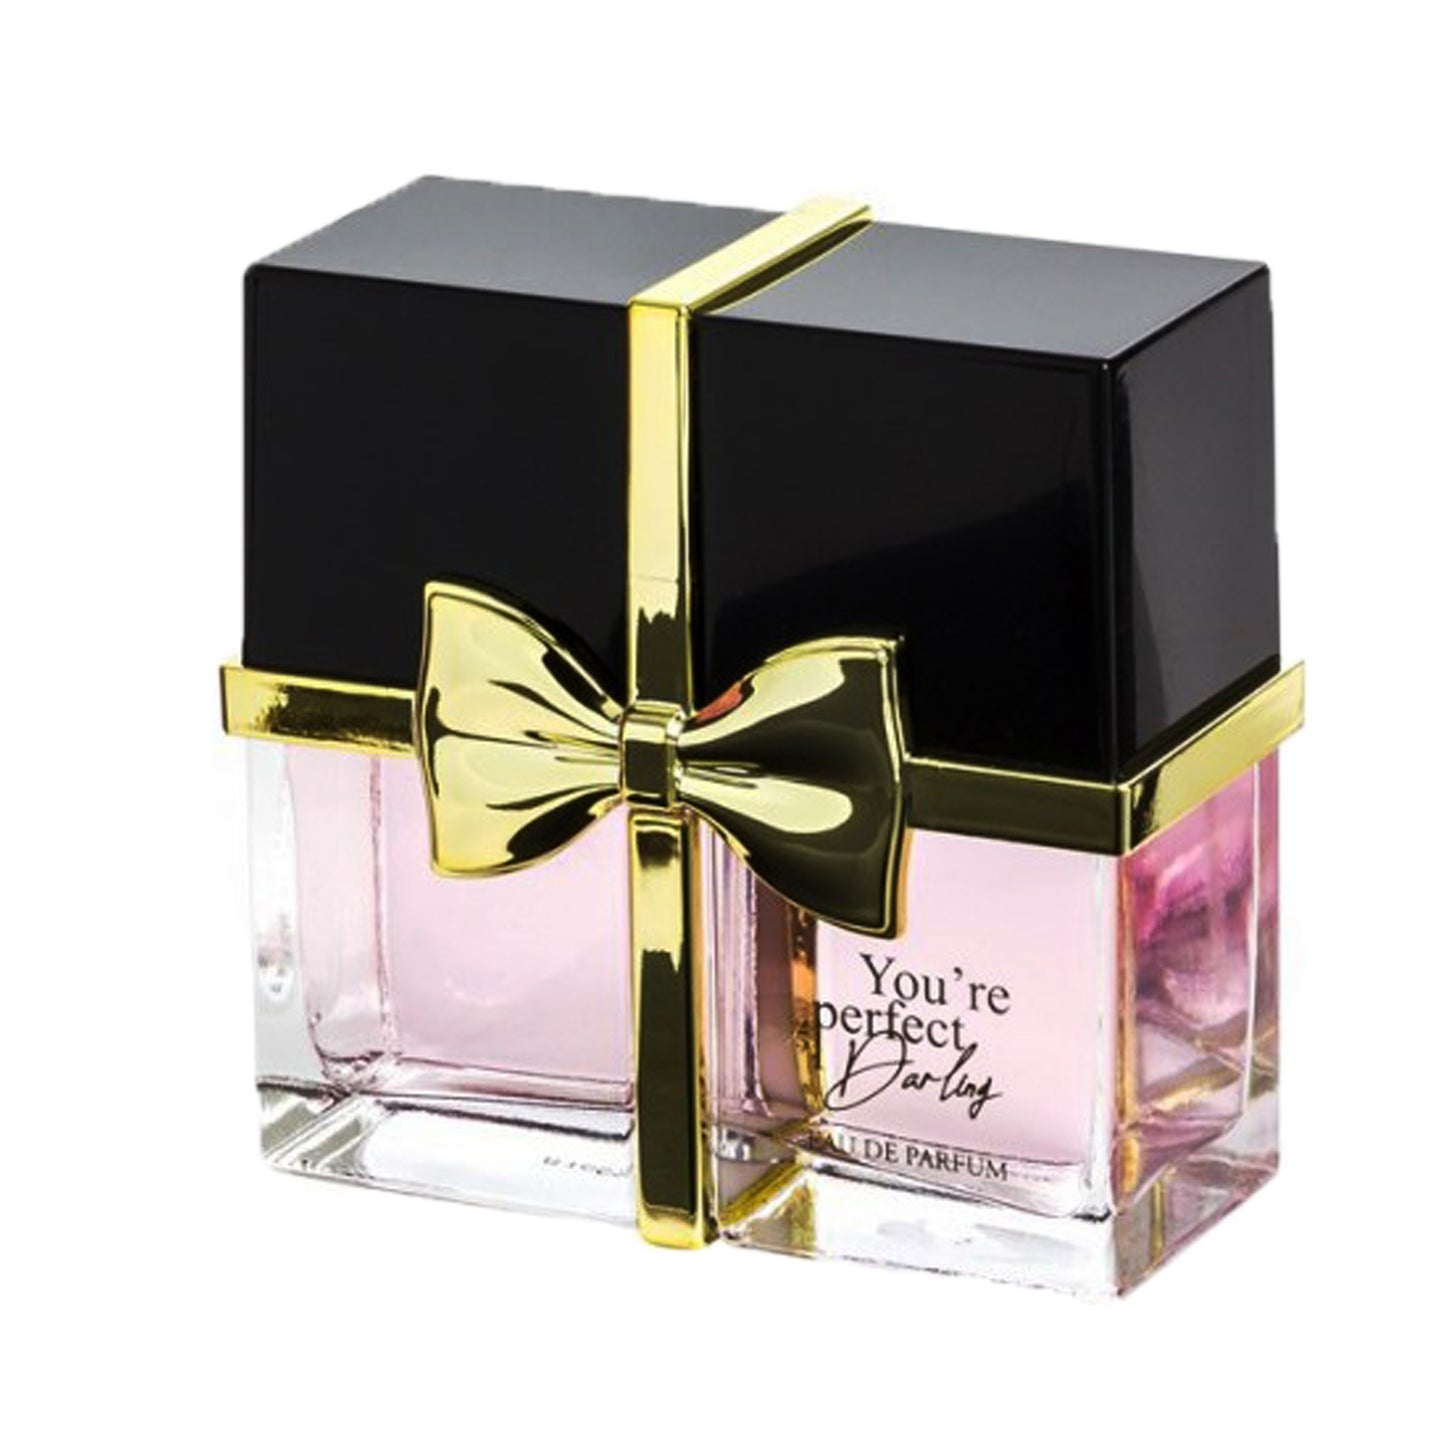 100 ml Parfum EDP YOU'RE PERFECT DARLING cu Arome Fructat-Florale pentru Femei